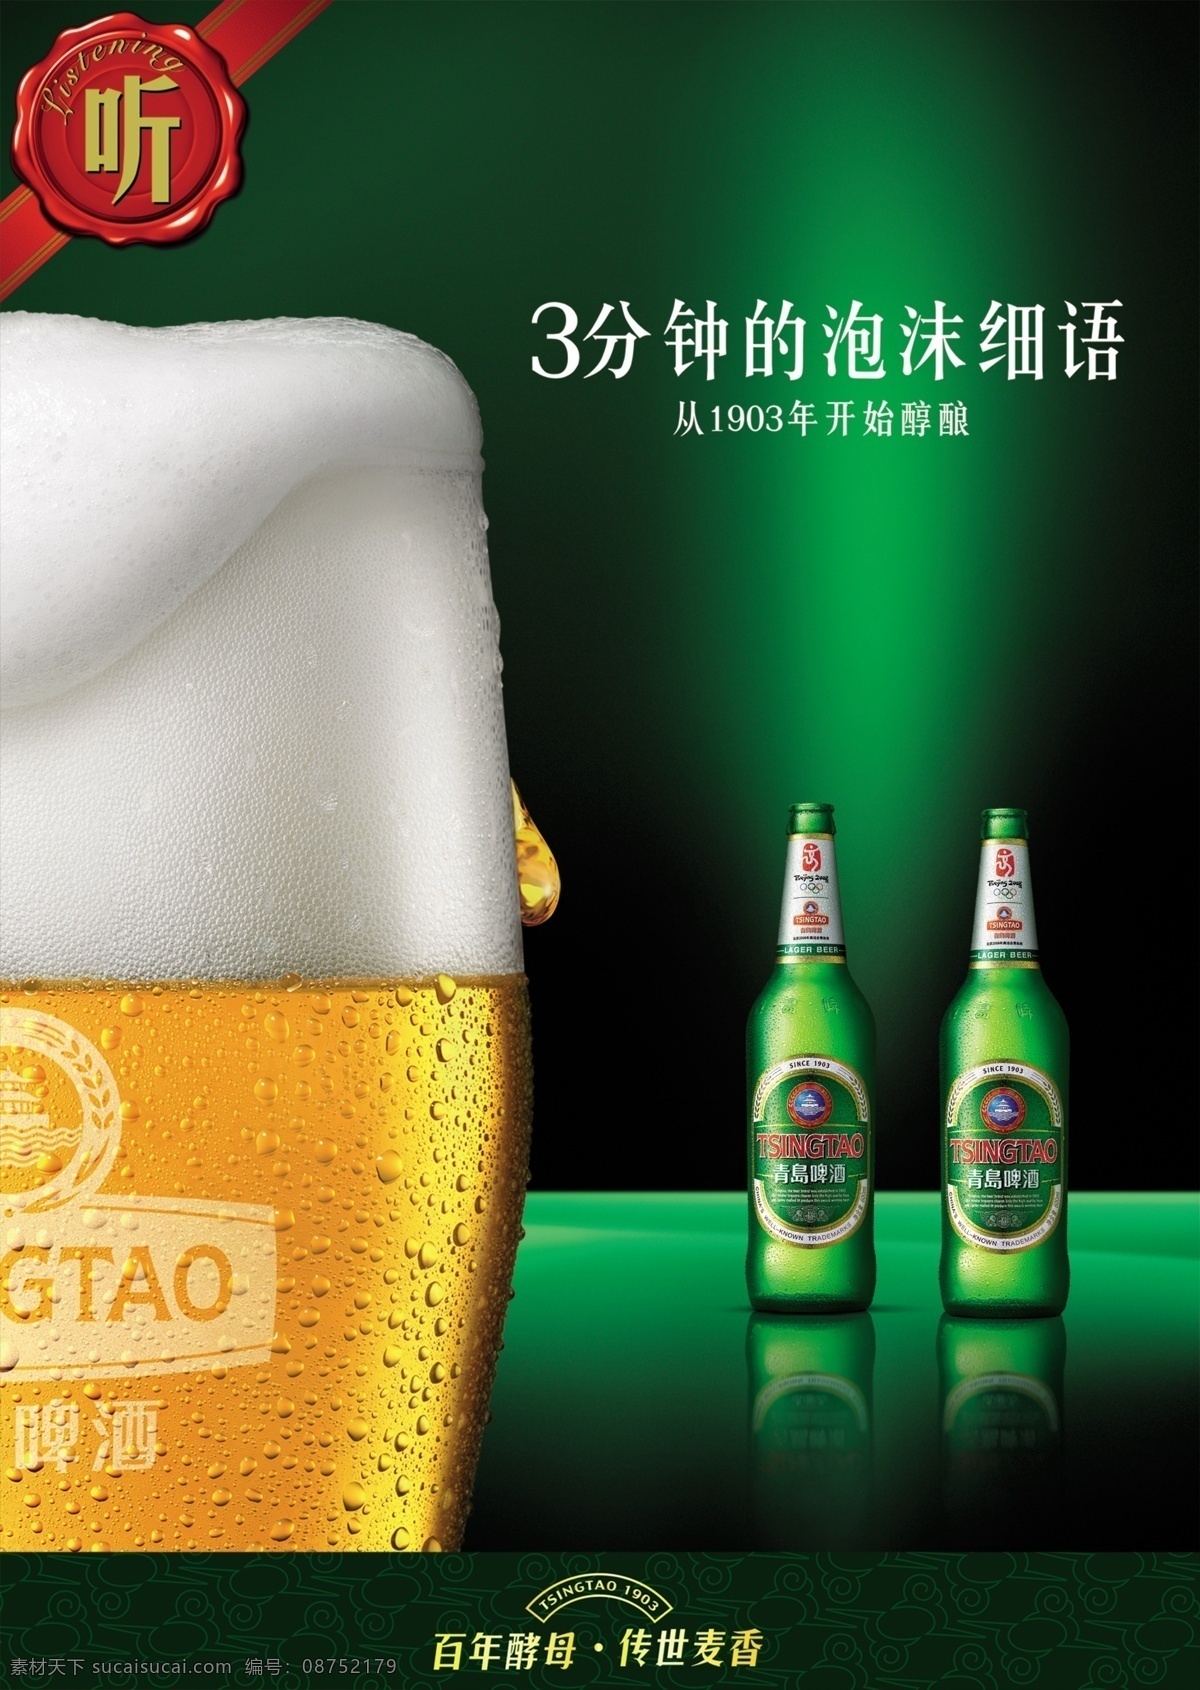 青岛啤酒 啤酒海报 啤酒广告 啤酒宣传 啤酒促销 啤酒单页 啤酒画册 啤酒宣传单 黑色